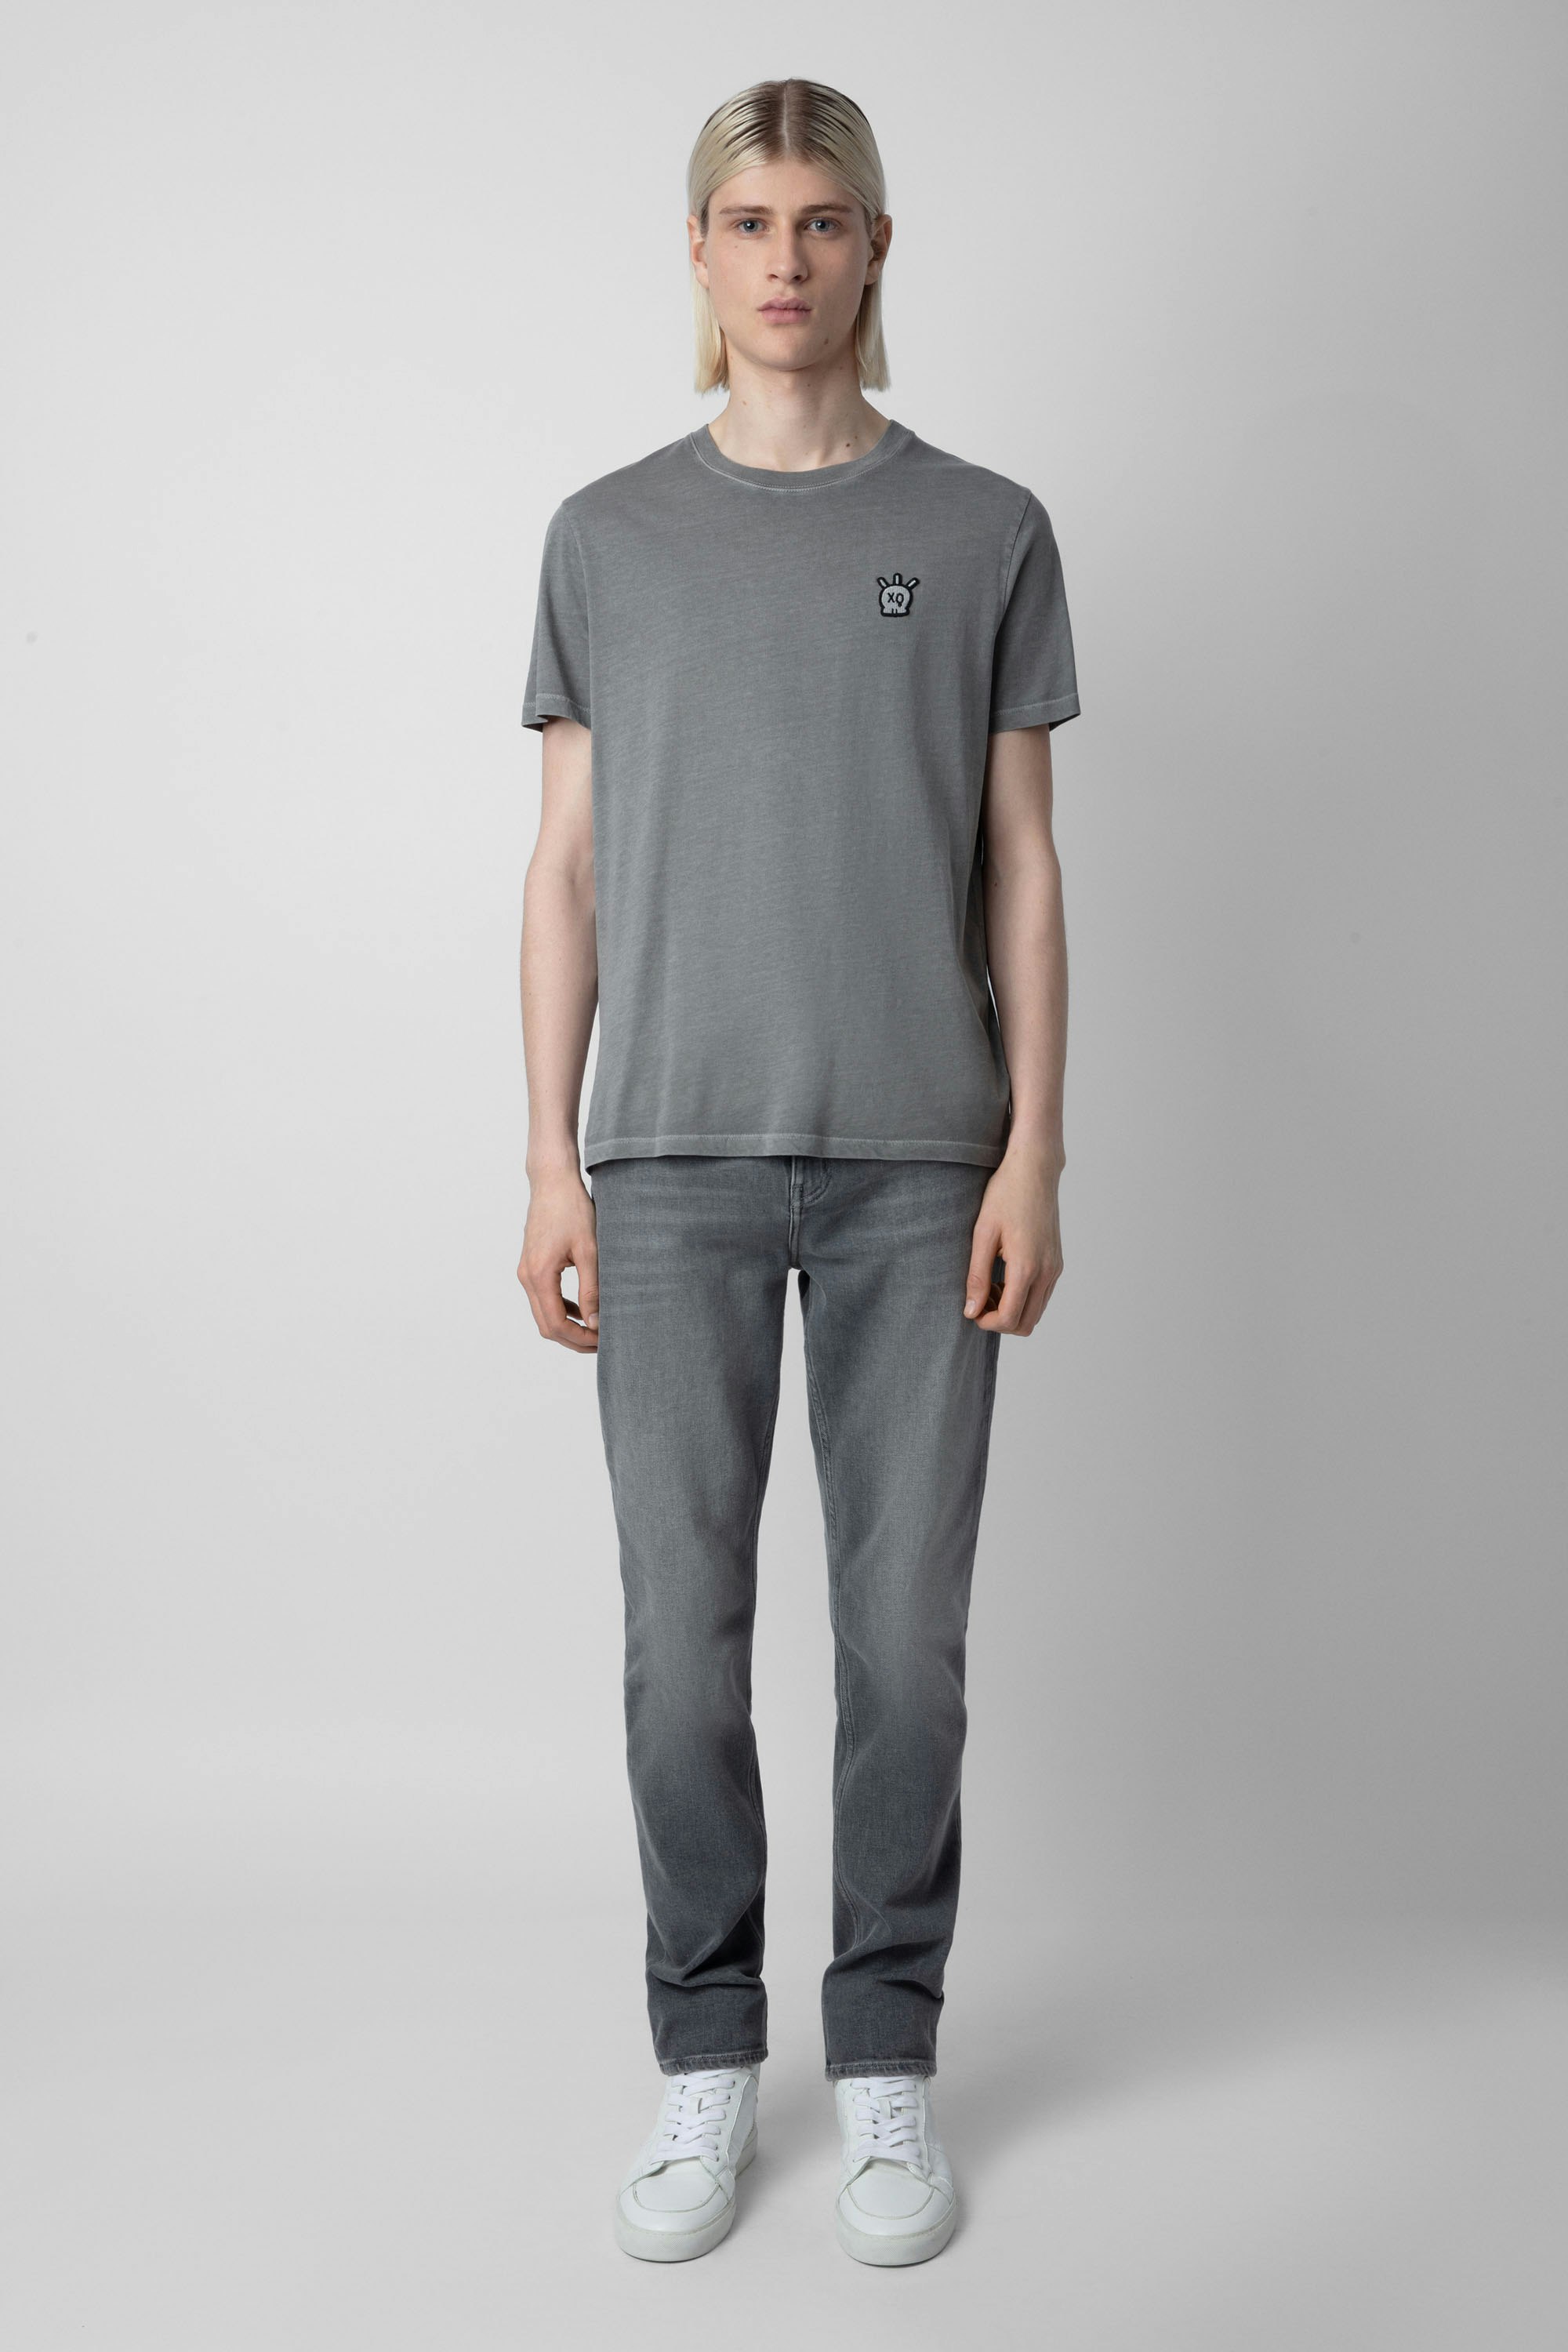 Camiseta Tommy Skull - Camiseta gris de algodón para hombre con parche de calavera XO en el pecho